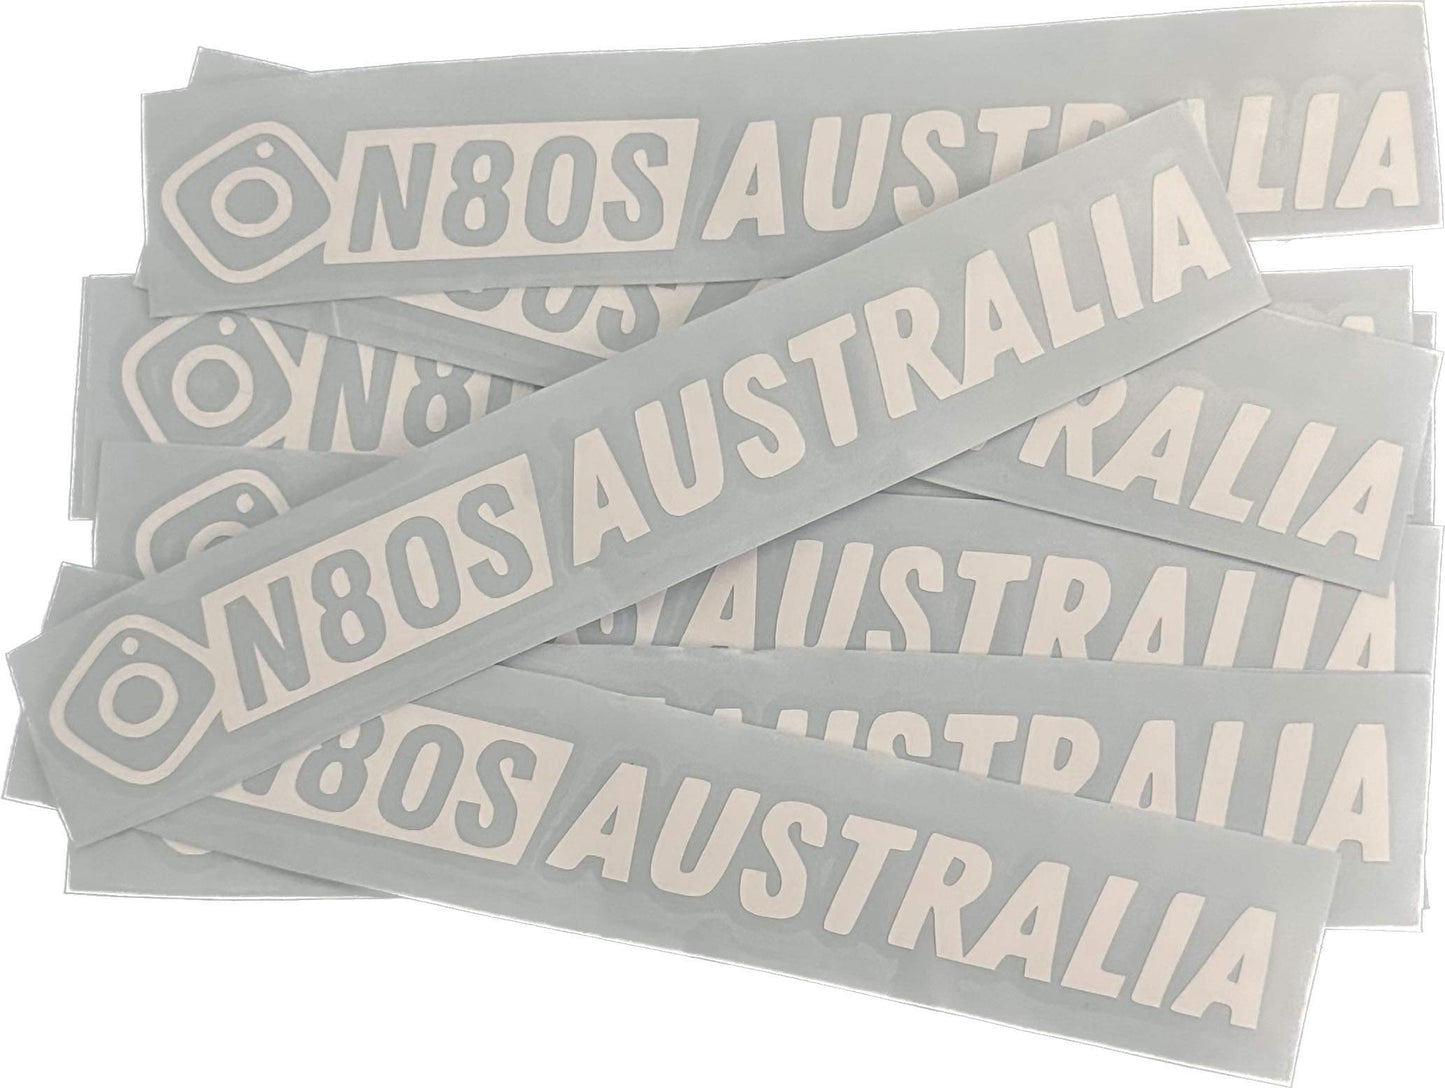 N80sAustralia Sticker